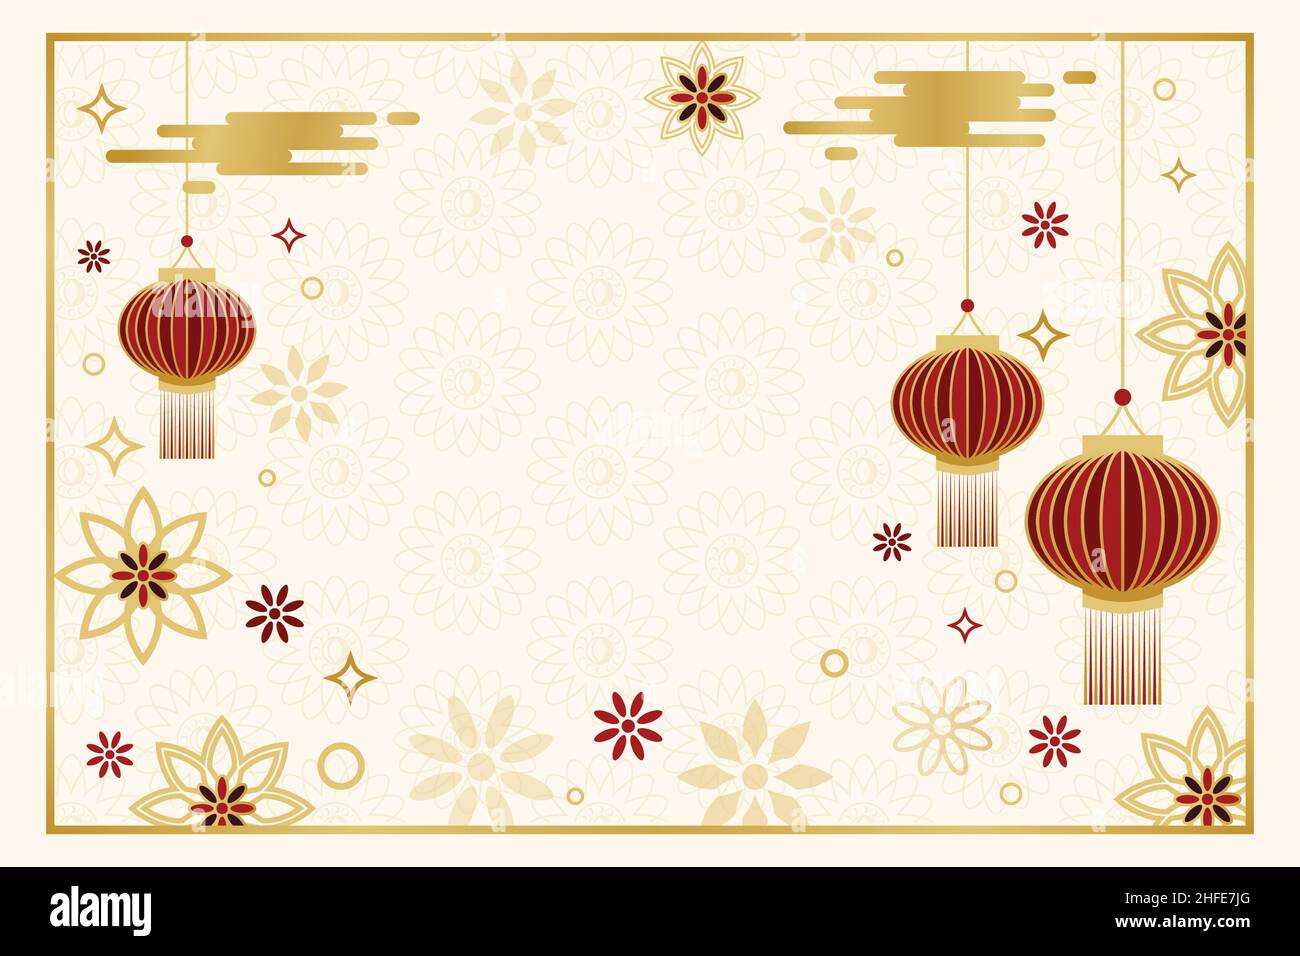 Nouvel an chinois éléments de fond de bannière horizontale.Fête du nouvel an en Chine scénario de fête avec nuages, lanterne, éléments de fleurs Illustration de Vecteur